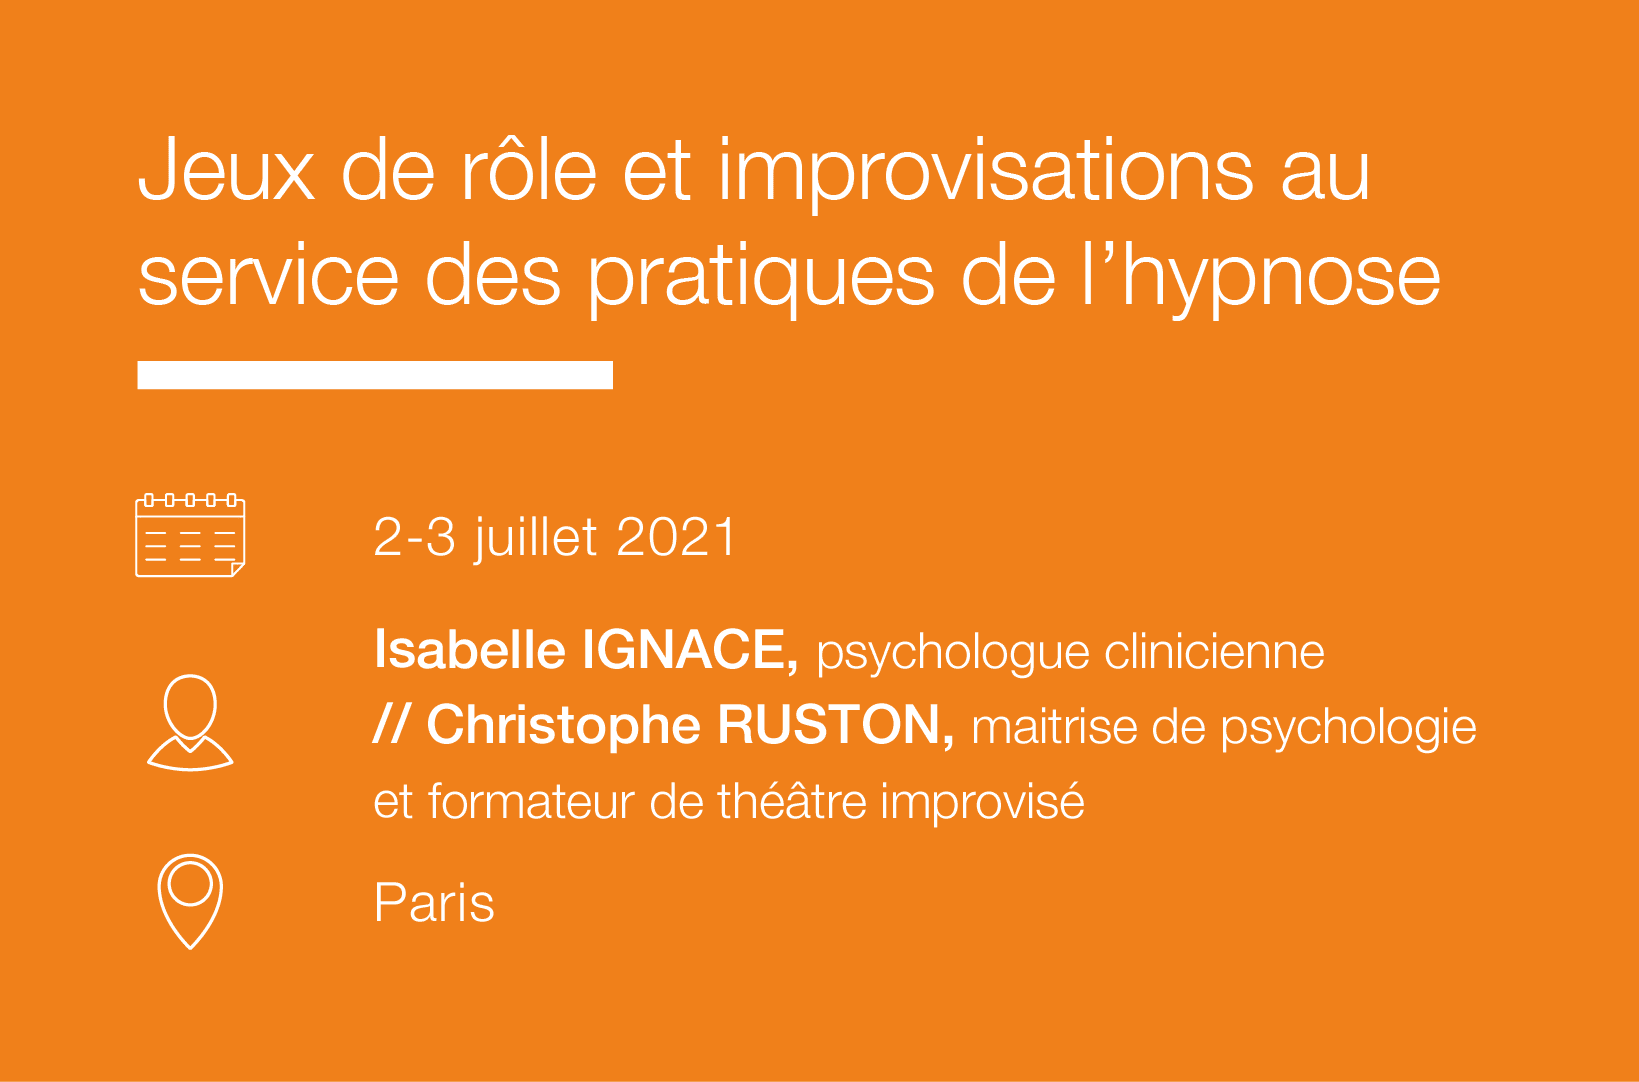 Seminaire Jeux de role et improvisations au service des pratiques de l hypnose IFH